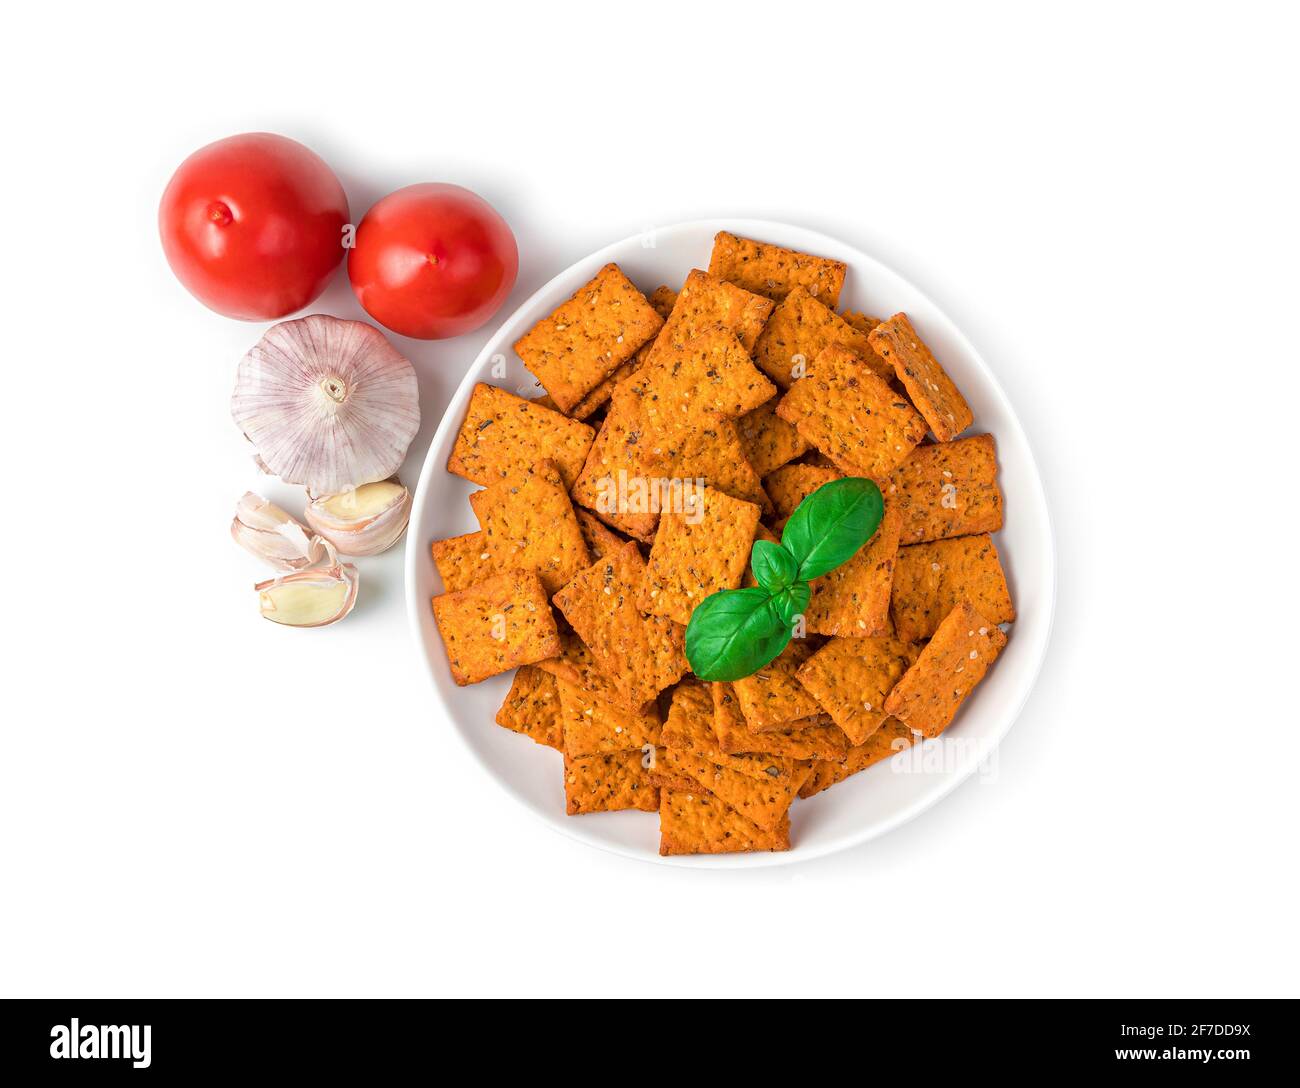 Ein Teller duftender Cracker mit Meersalz, Knoblauch und frischen Tomaten isoliert auf weißem Hintergrund. Draufsicht. Italienische Vorspeise. Stockfoto